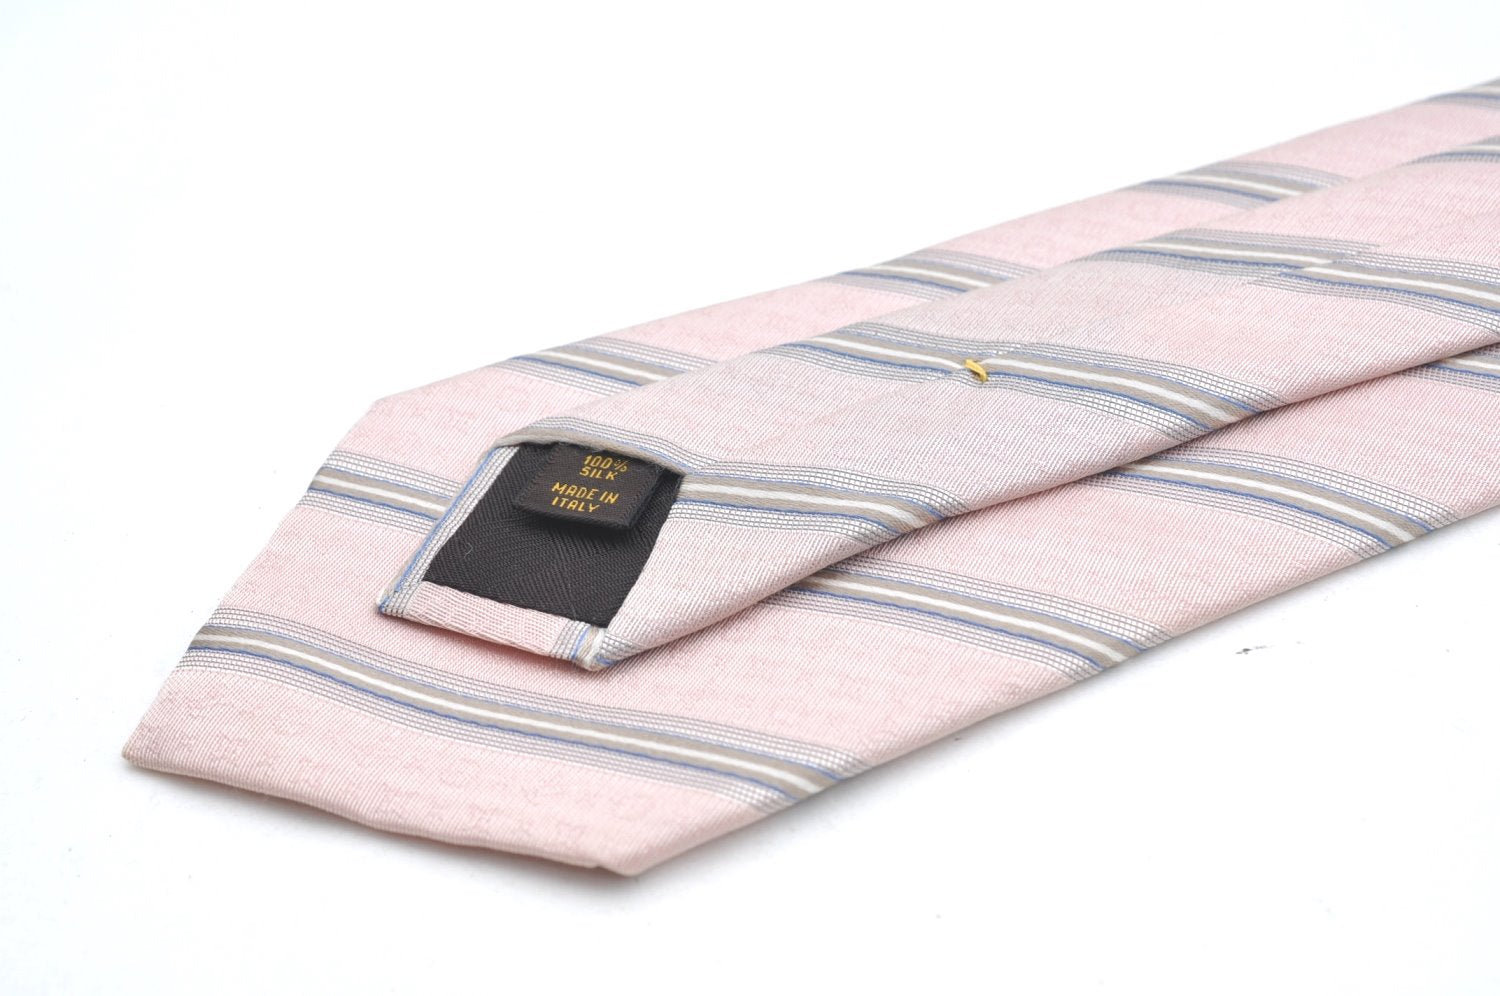 Authentic Louis Vuitton Necktie Tie Silk Stripe Motif Light Pink LV K5027